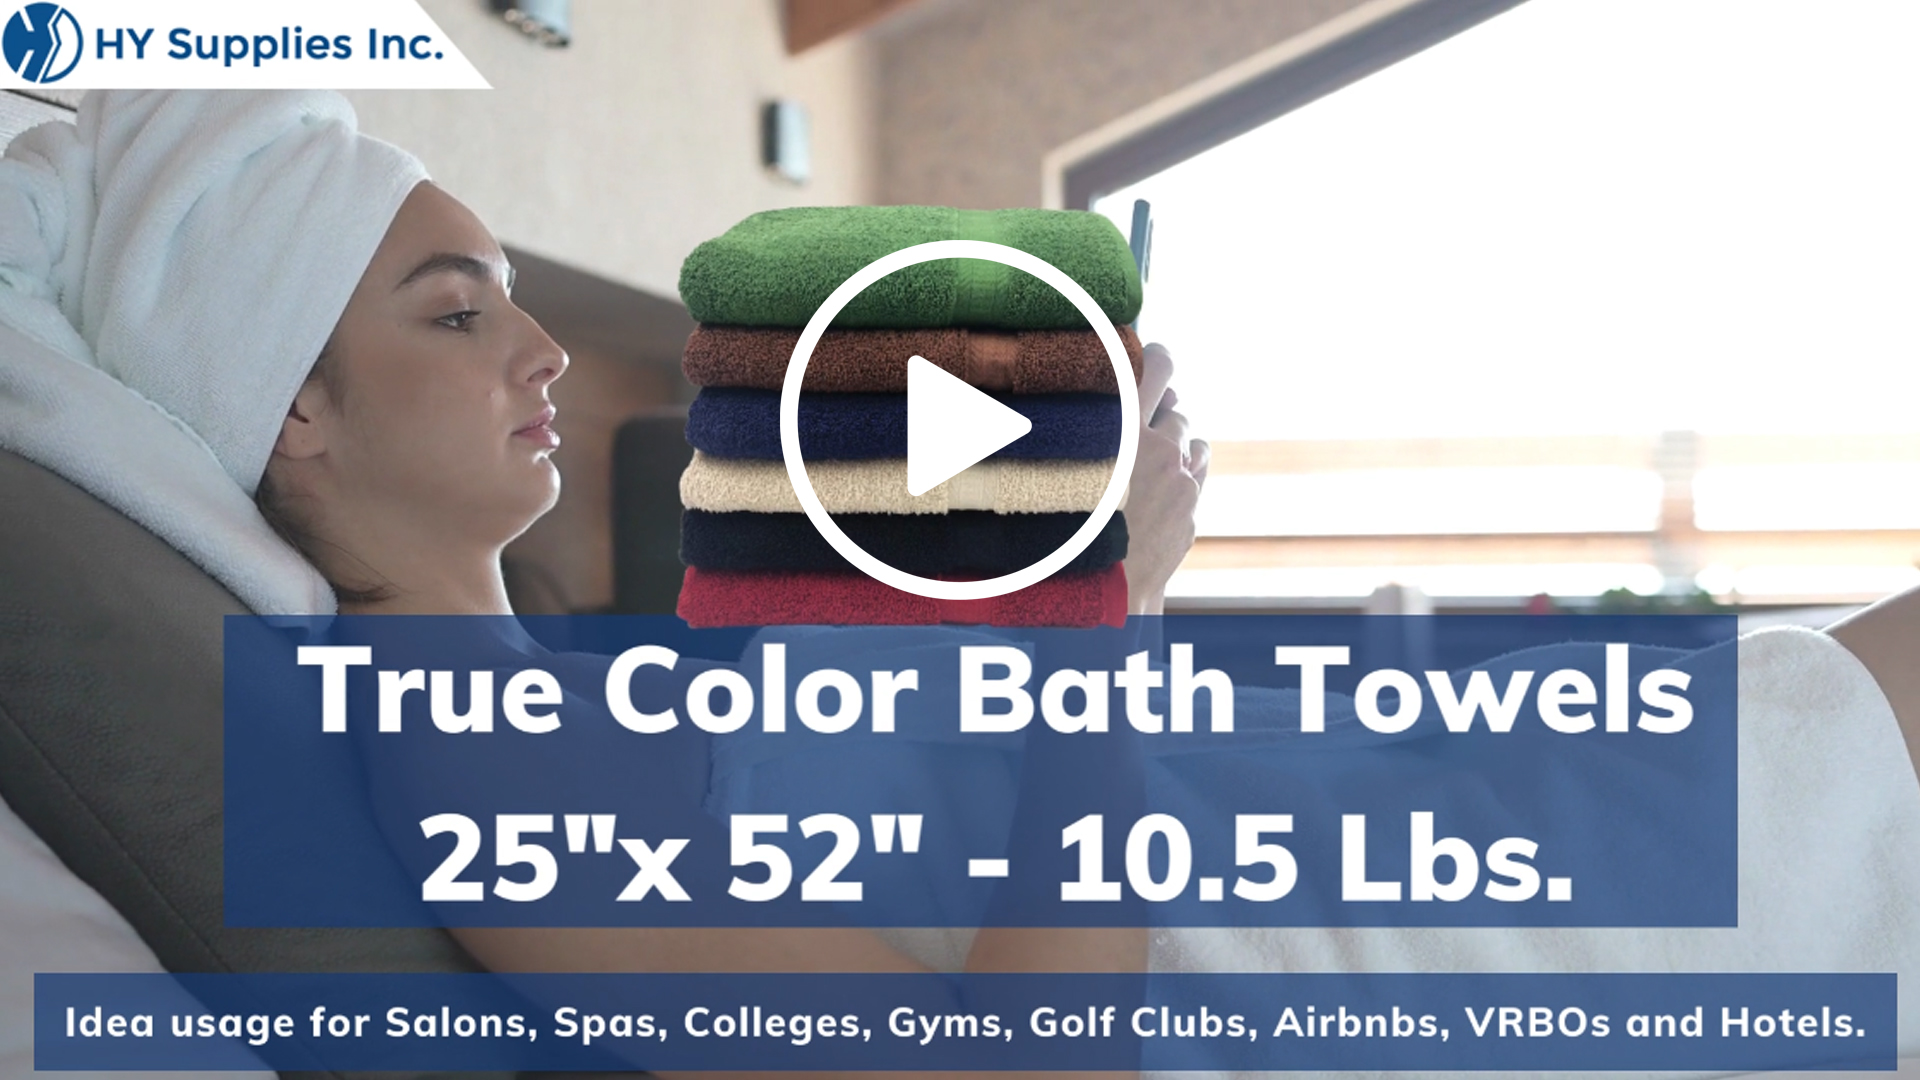 True Color Bath Towels - 25"x 52" - 10.5 Lbs. 